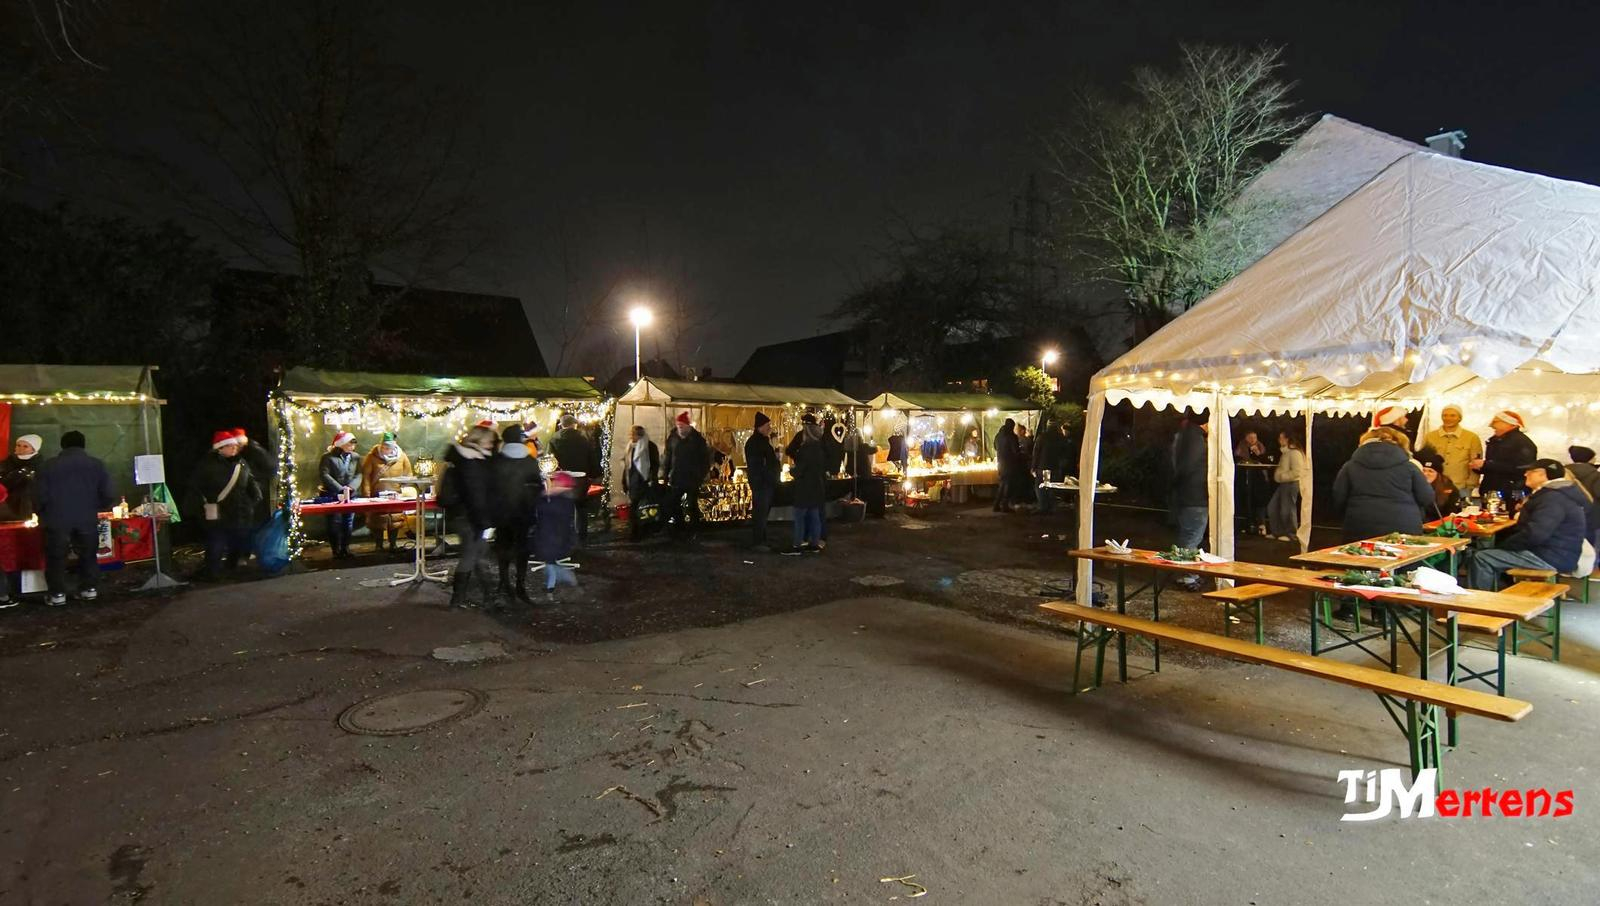 Ansicht des Adventmarkt auf dem Schulhof mit Ständen, Menschen und weihnachtlicher Beleuchtung